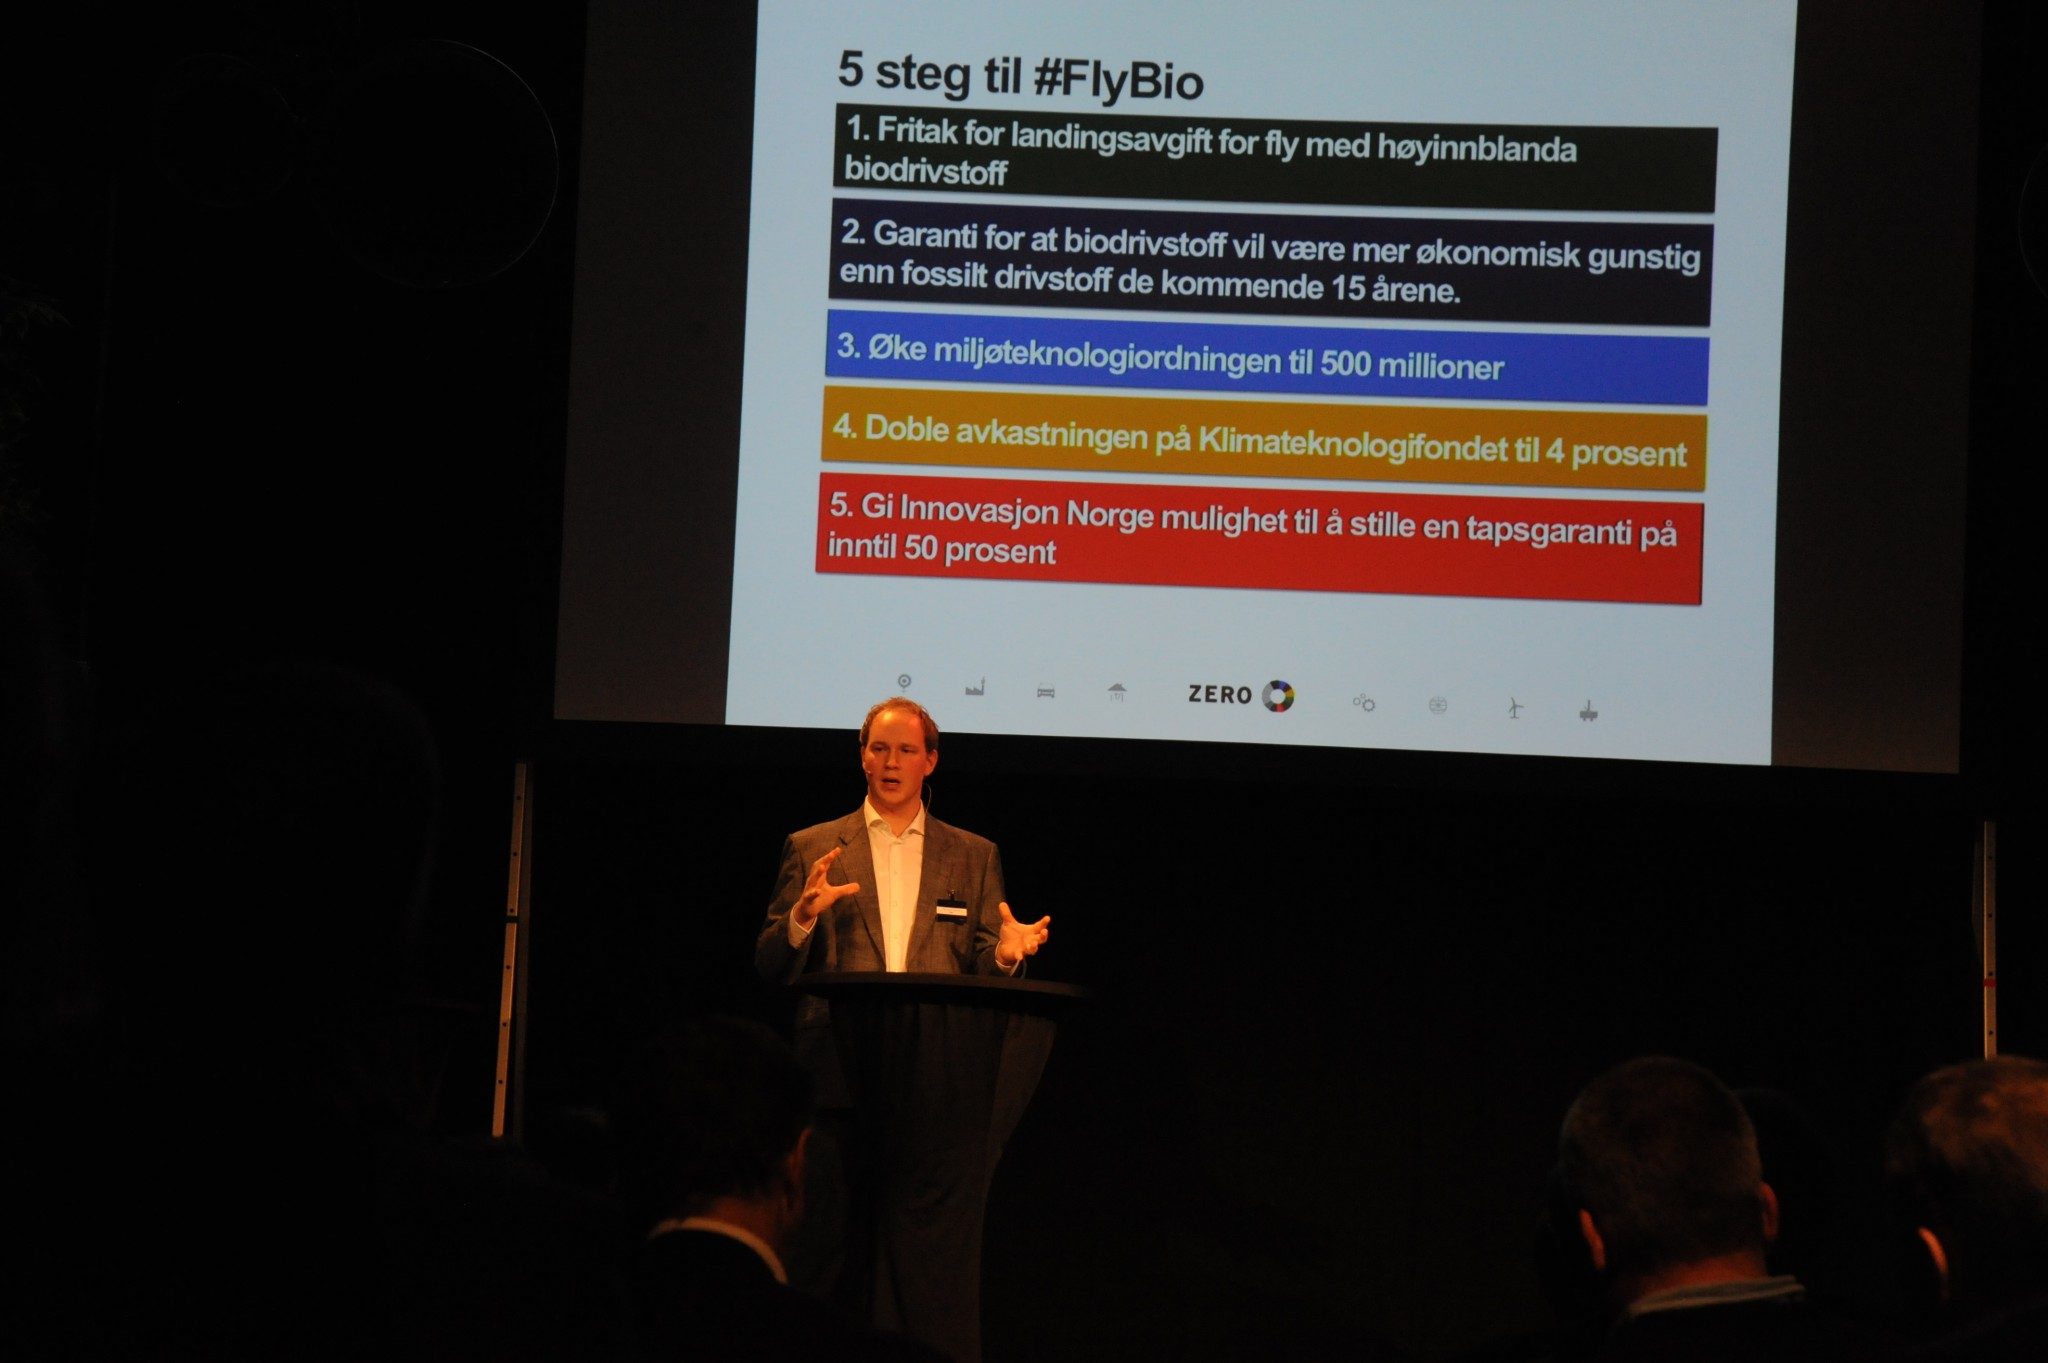 5 steg for #FlyBio i Norge